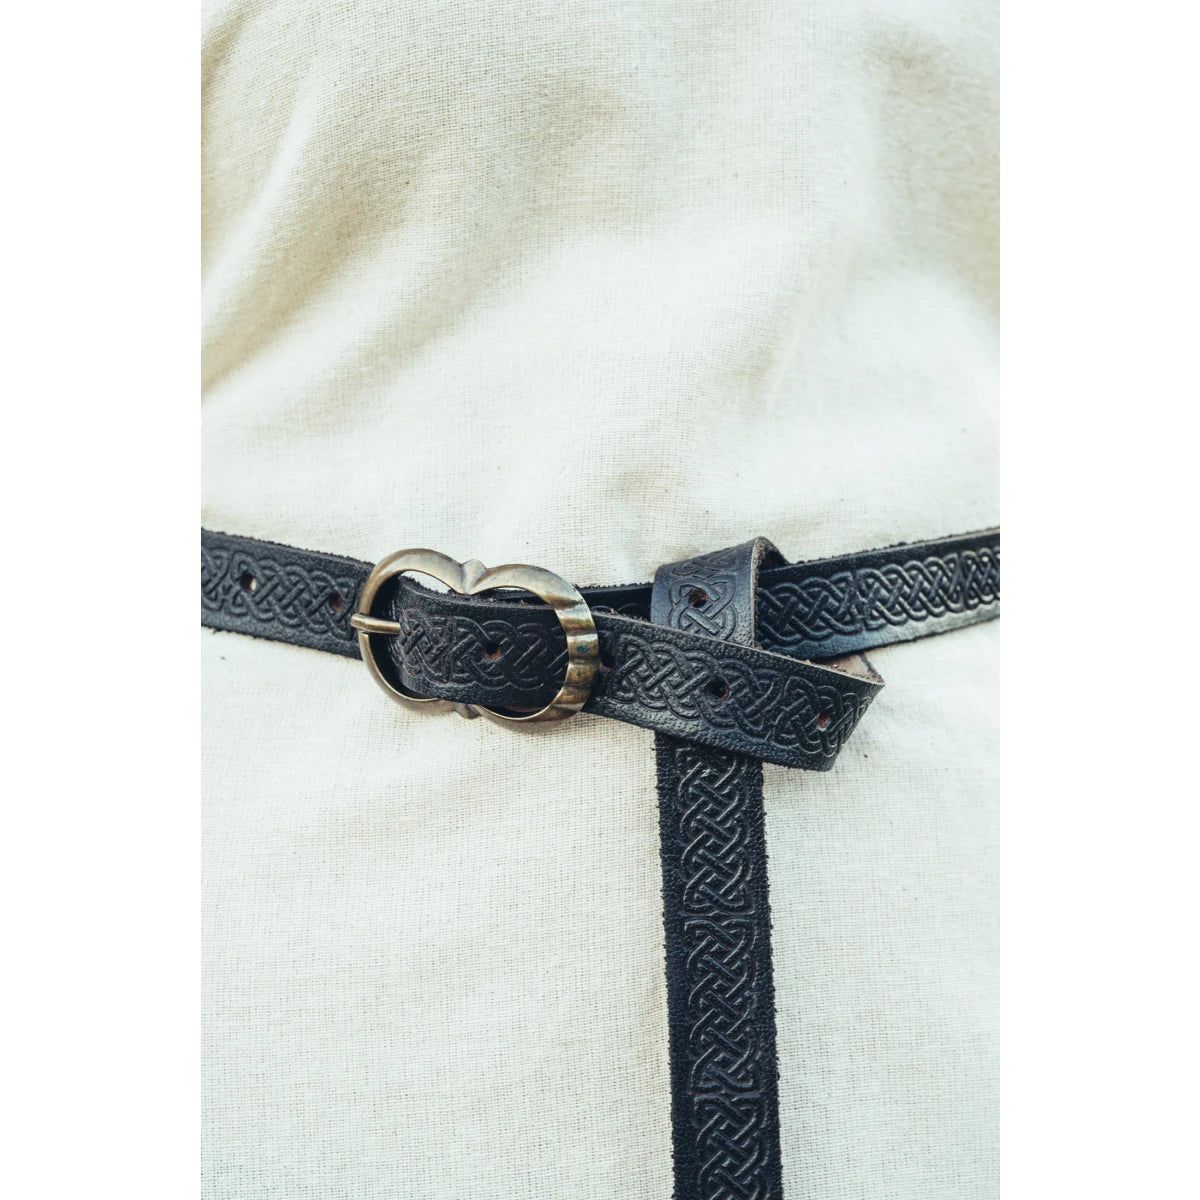 Ladies' Patterned Leather Viking Belt | Celtic Knotwork Design